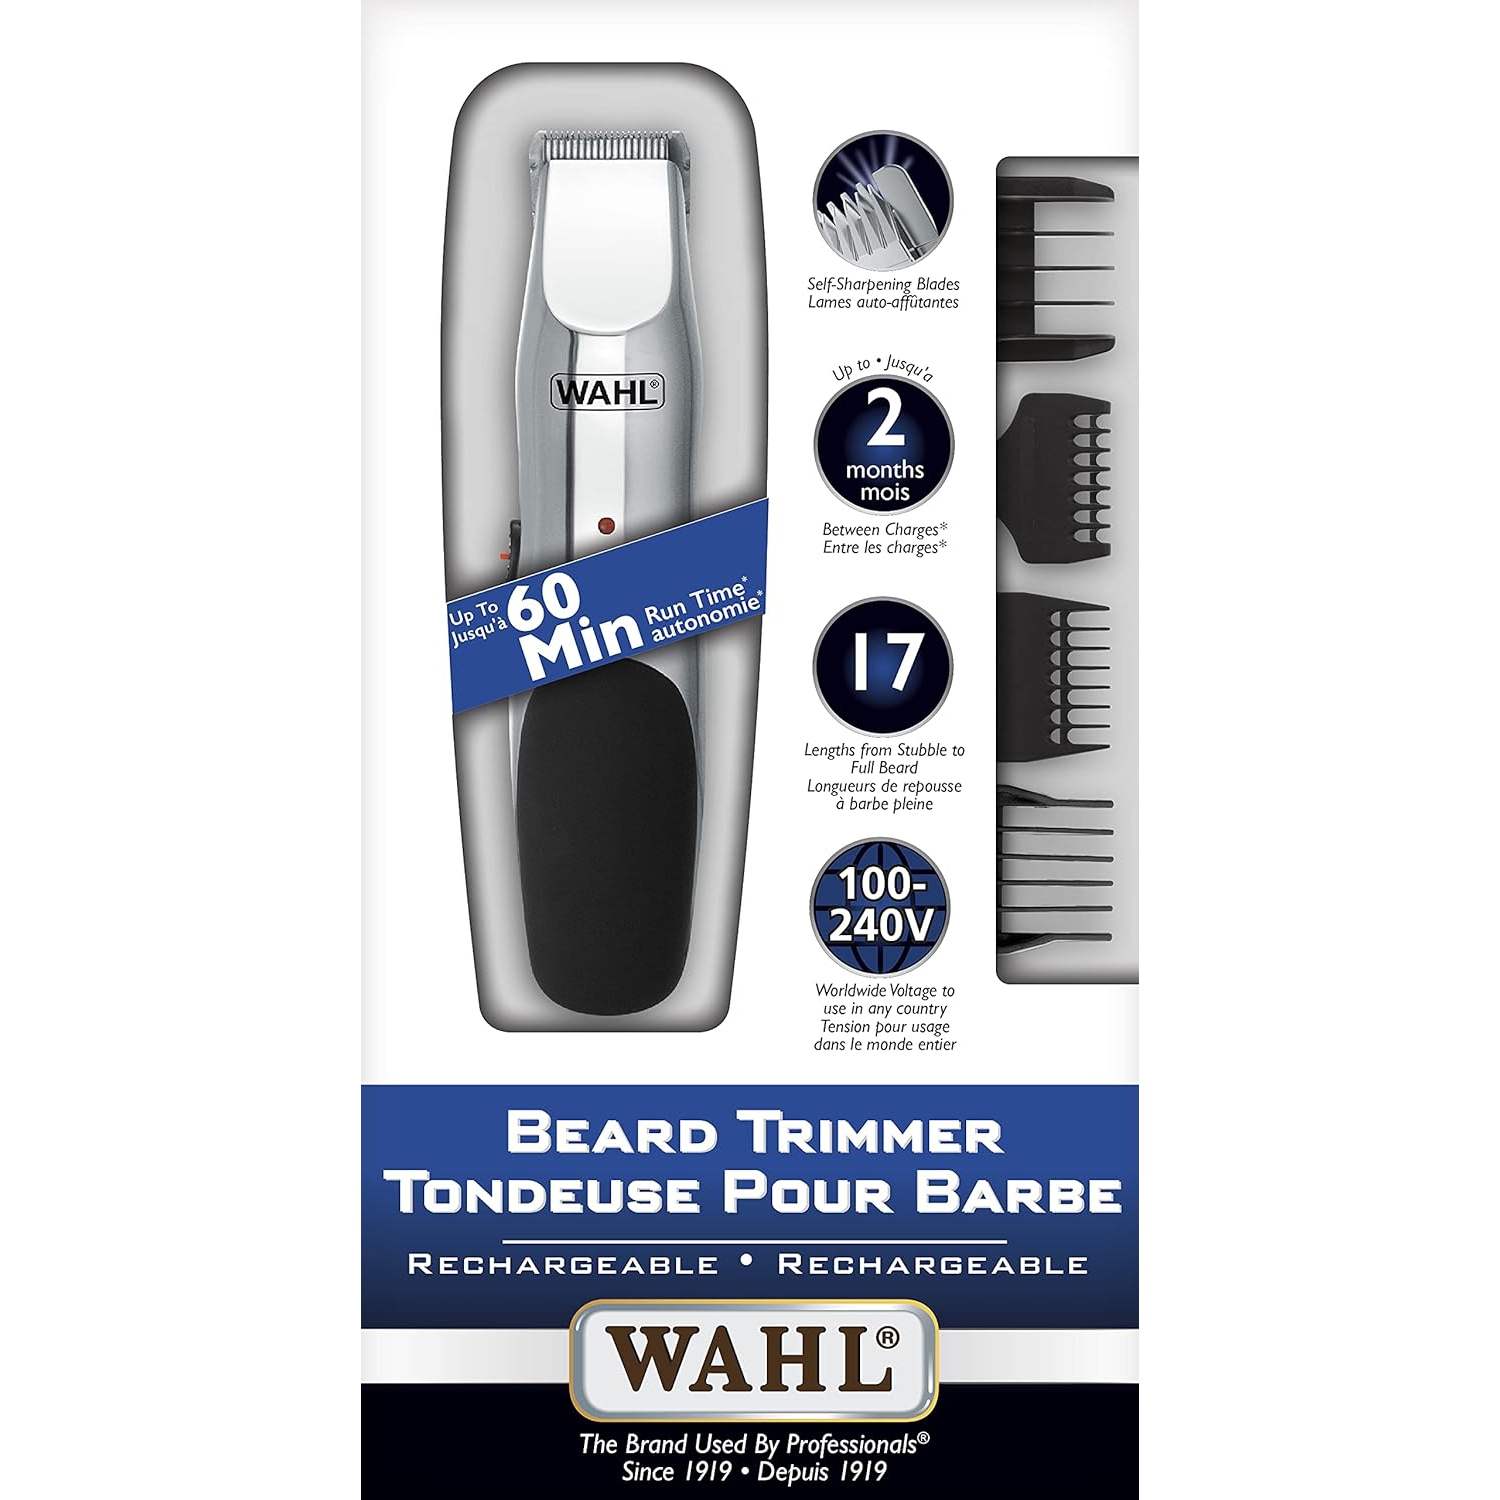 WAHL Beard Trimmer #3243